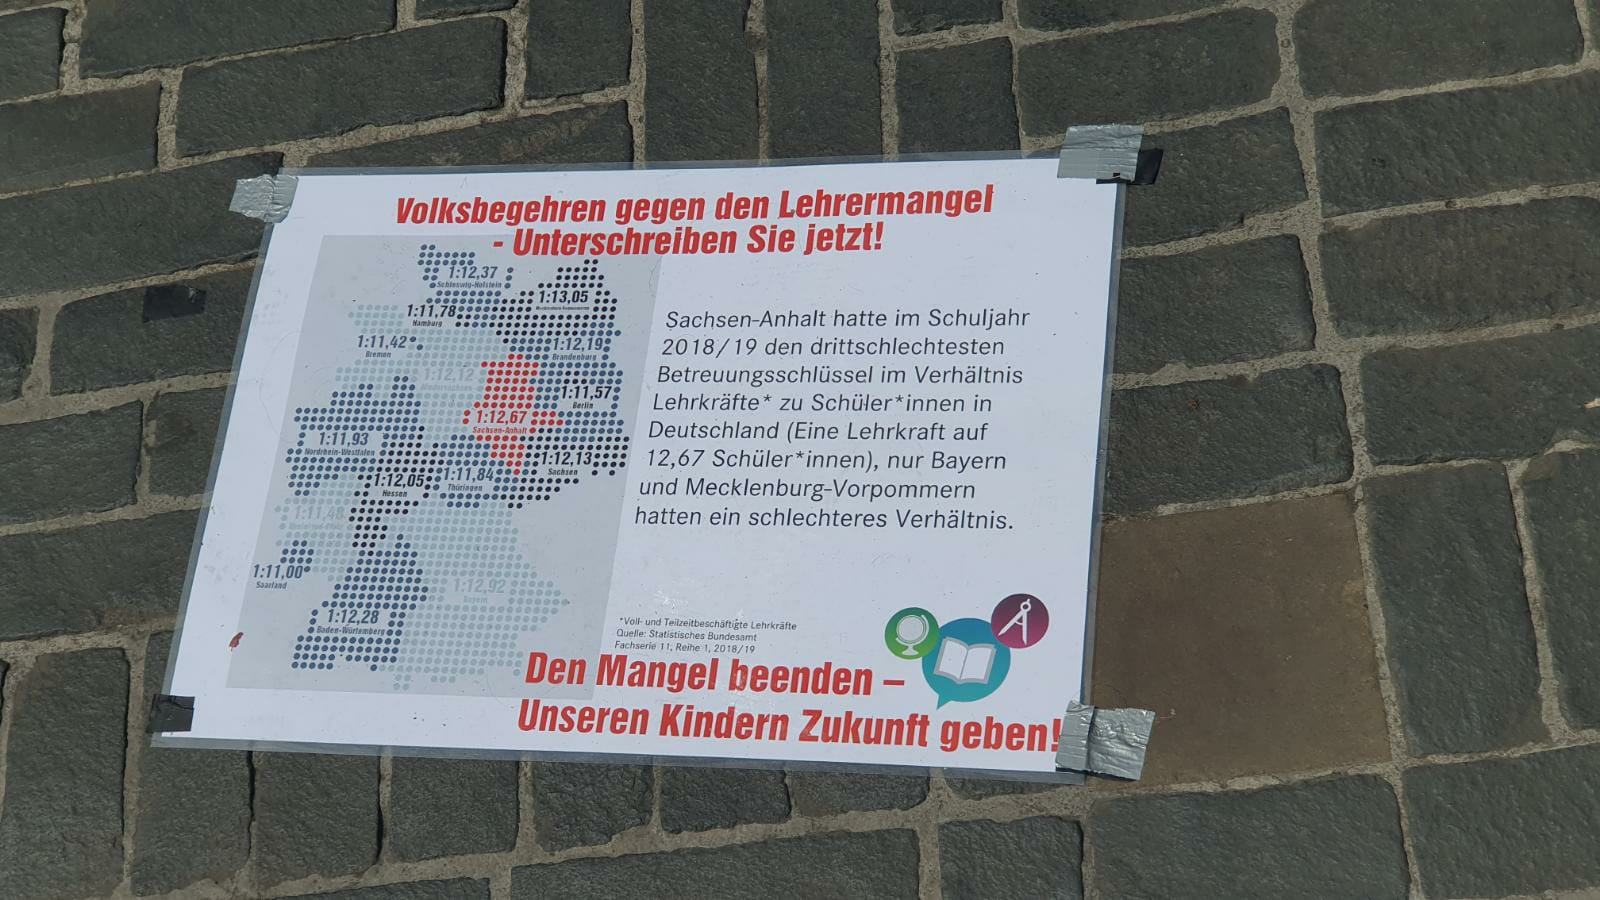 Volksbegehren startet großes Sammelwochenende gegen den Lehrermangel in 20 Städten in Sachsen-Anhalt